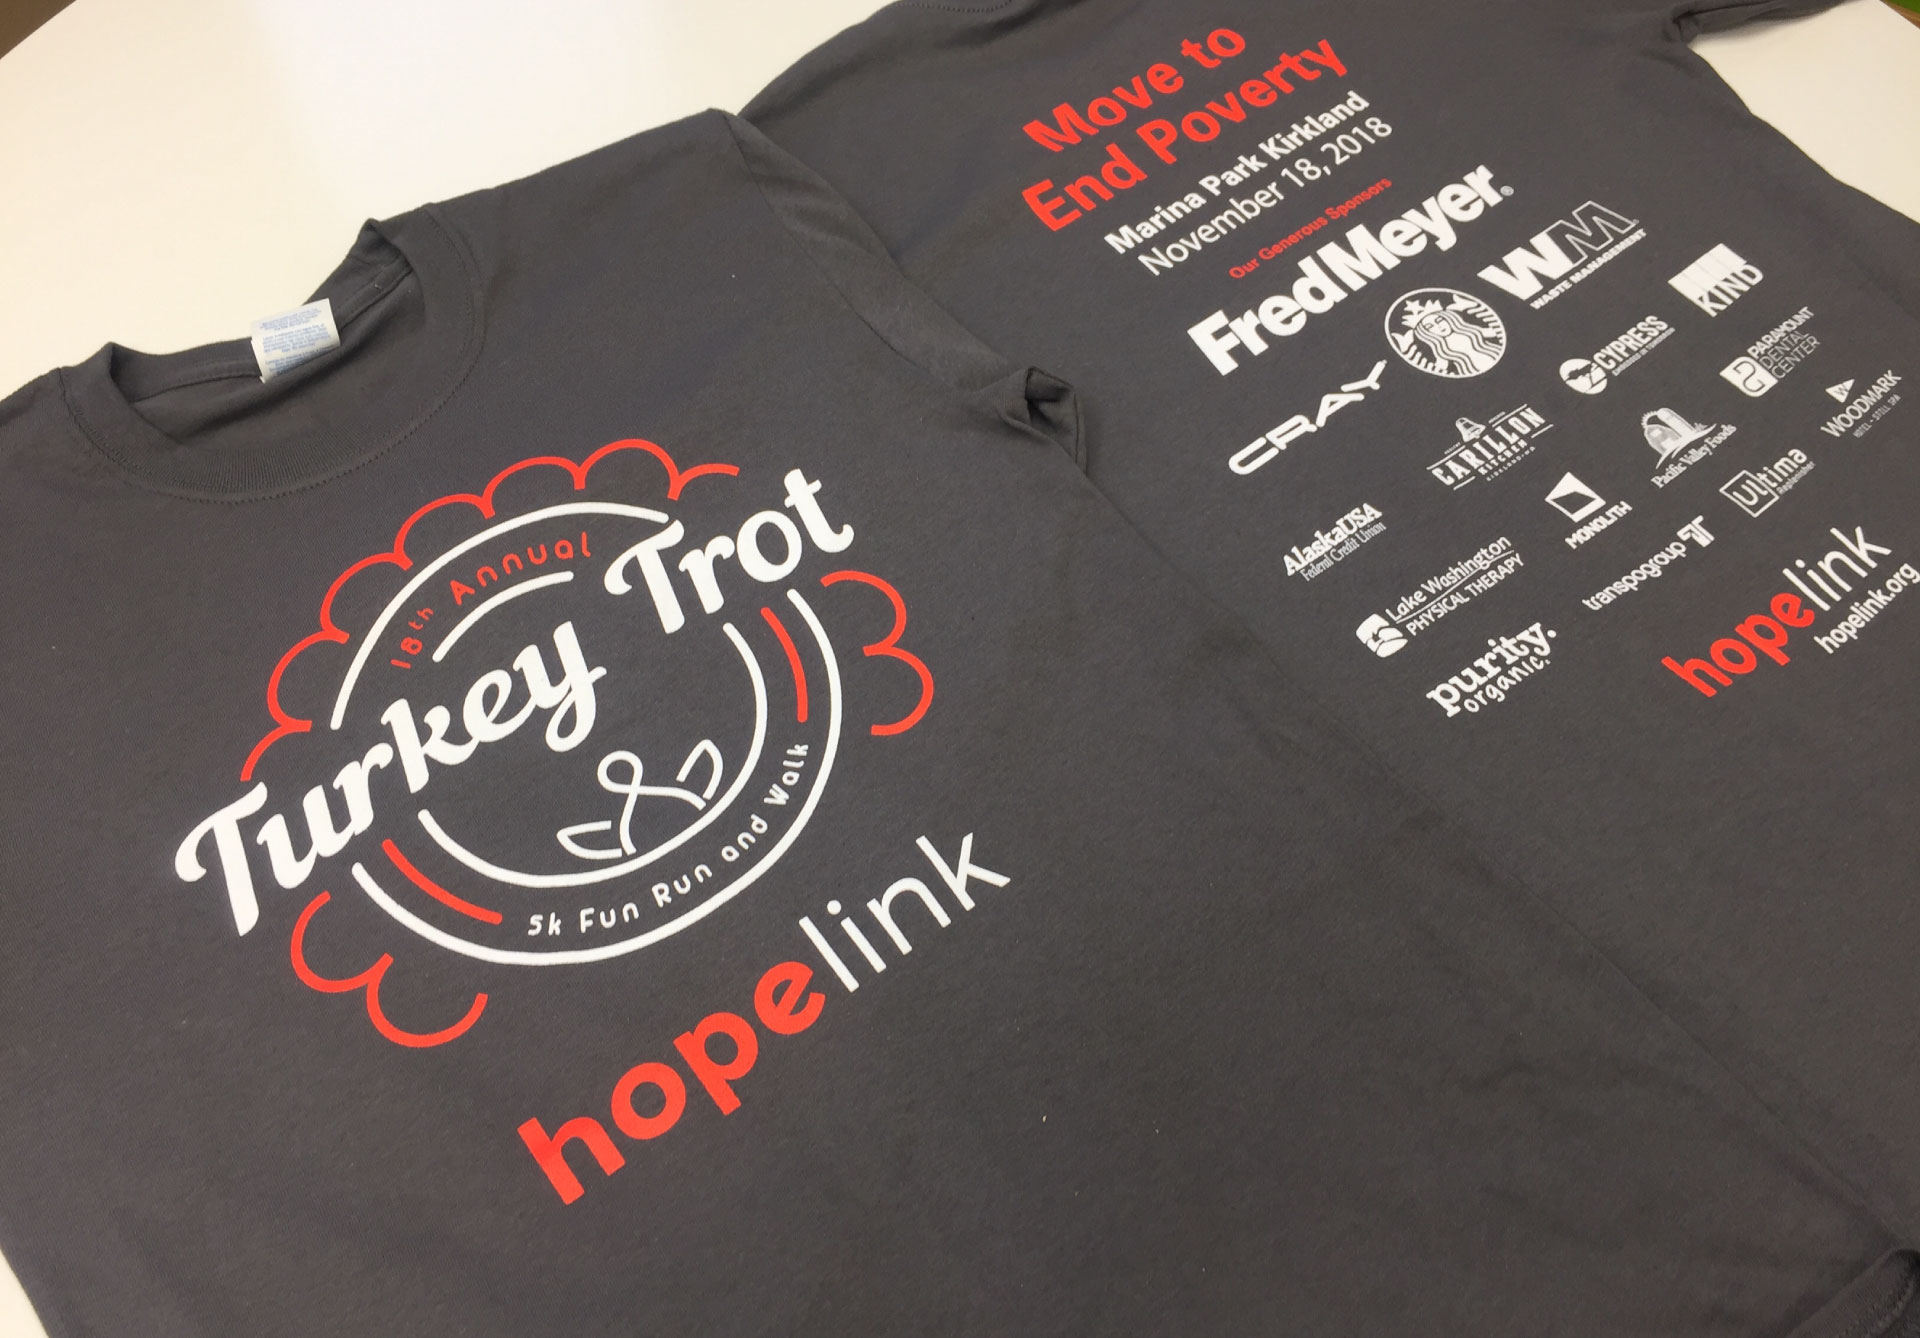 Hopelink Turkey Trot T-Shirt